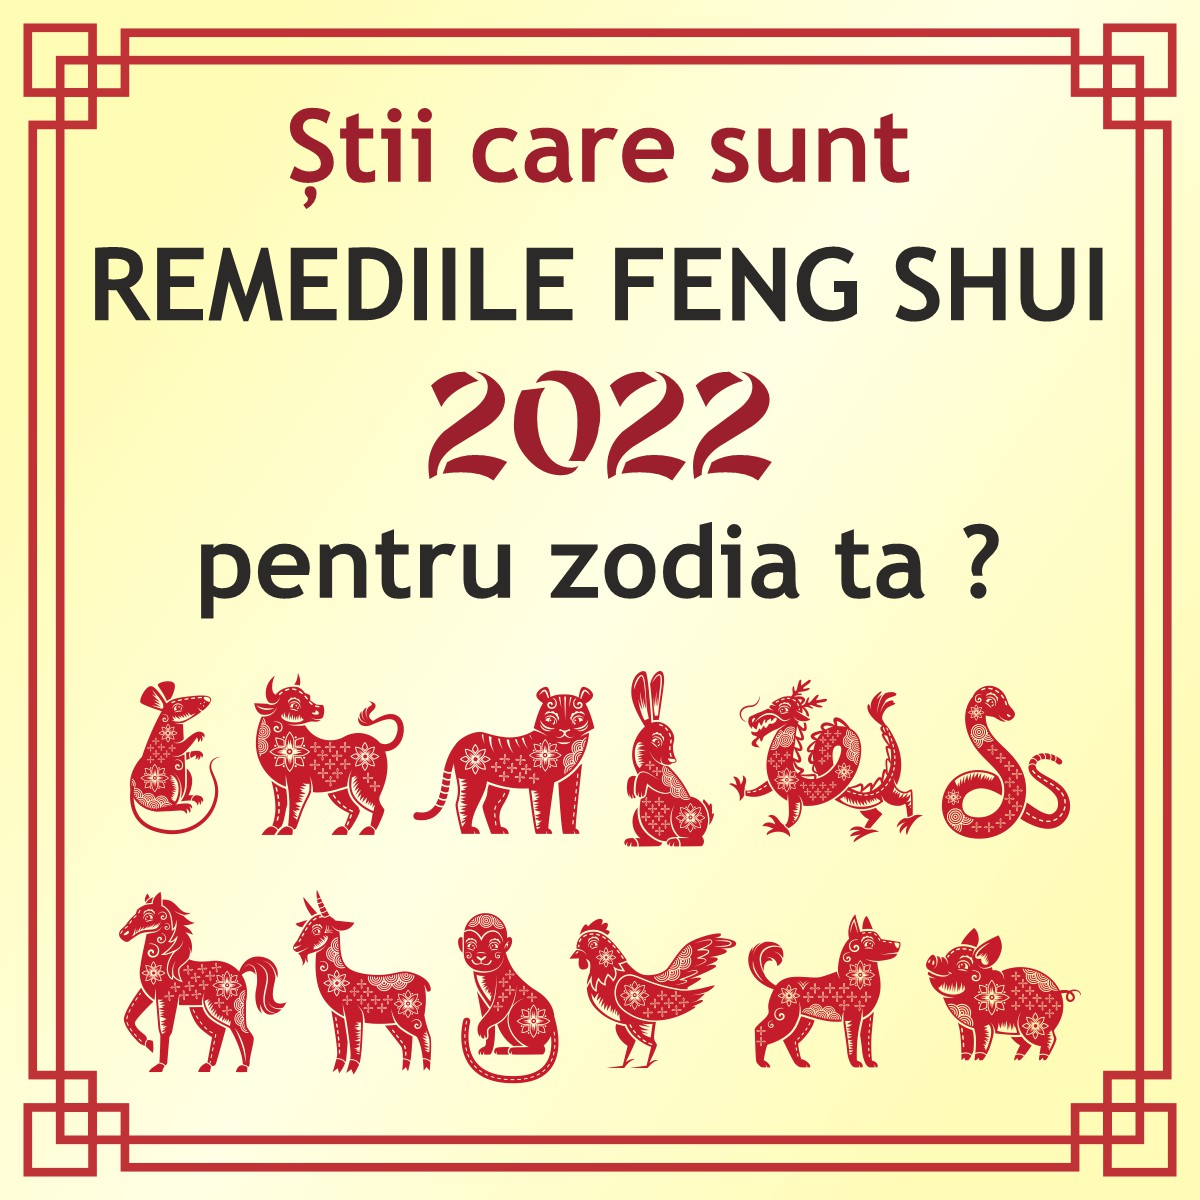 FengShui4Life - Sti care sunt remediile pentru zodia ta in noul an chinezesc 2022 ?